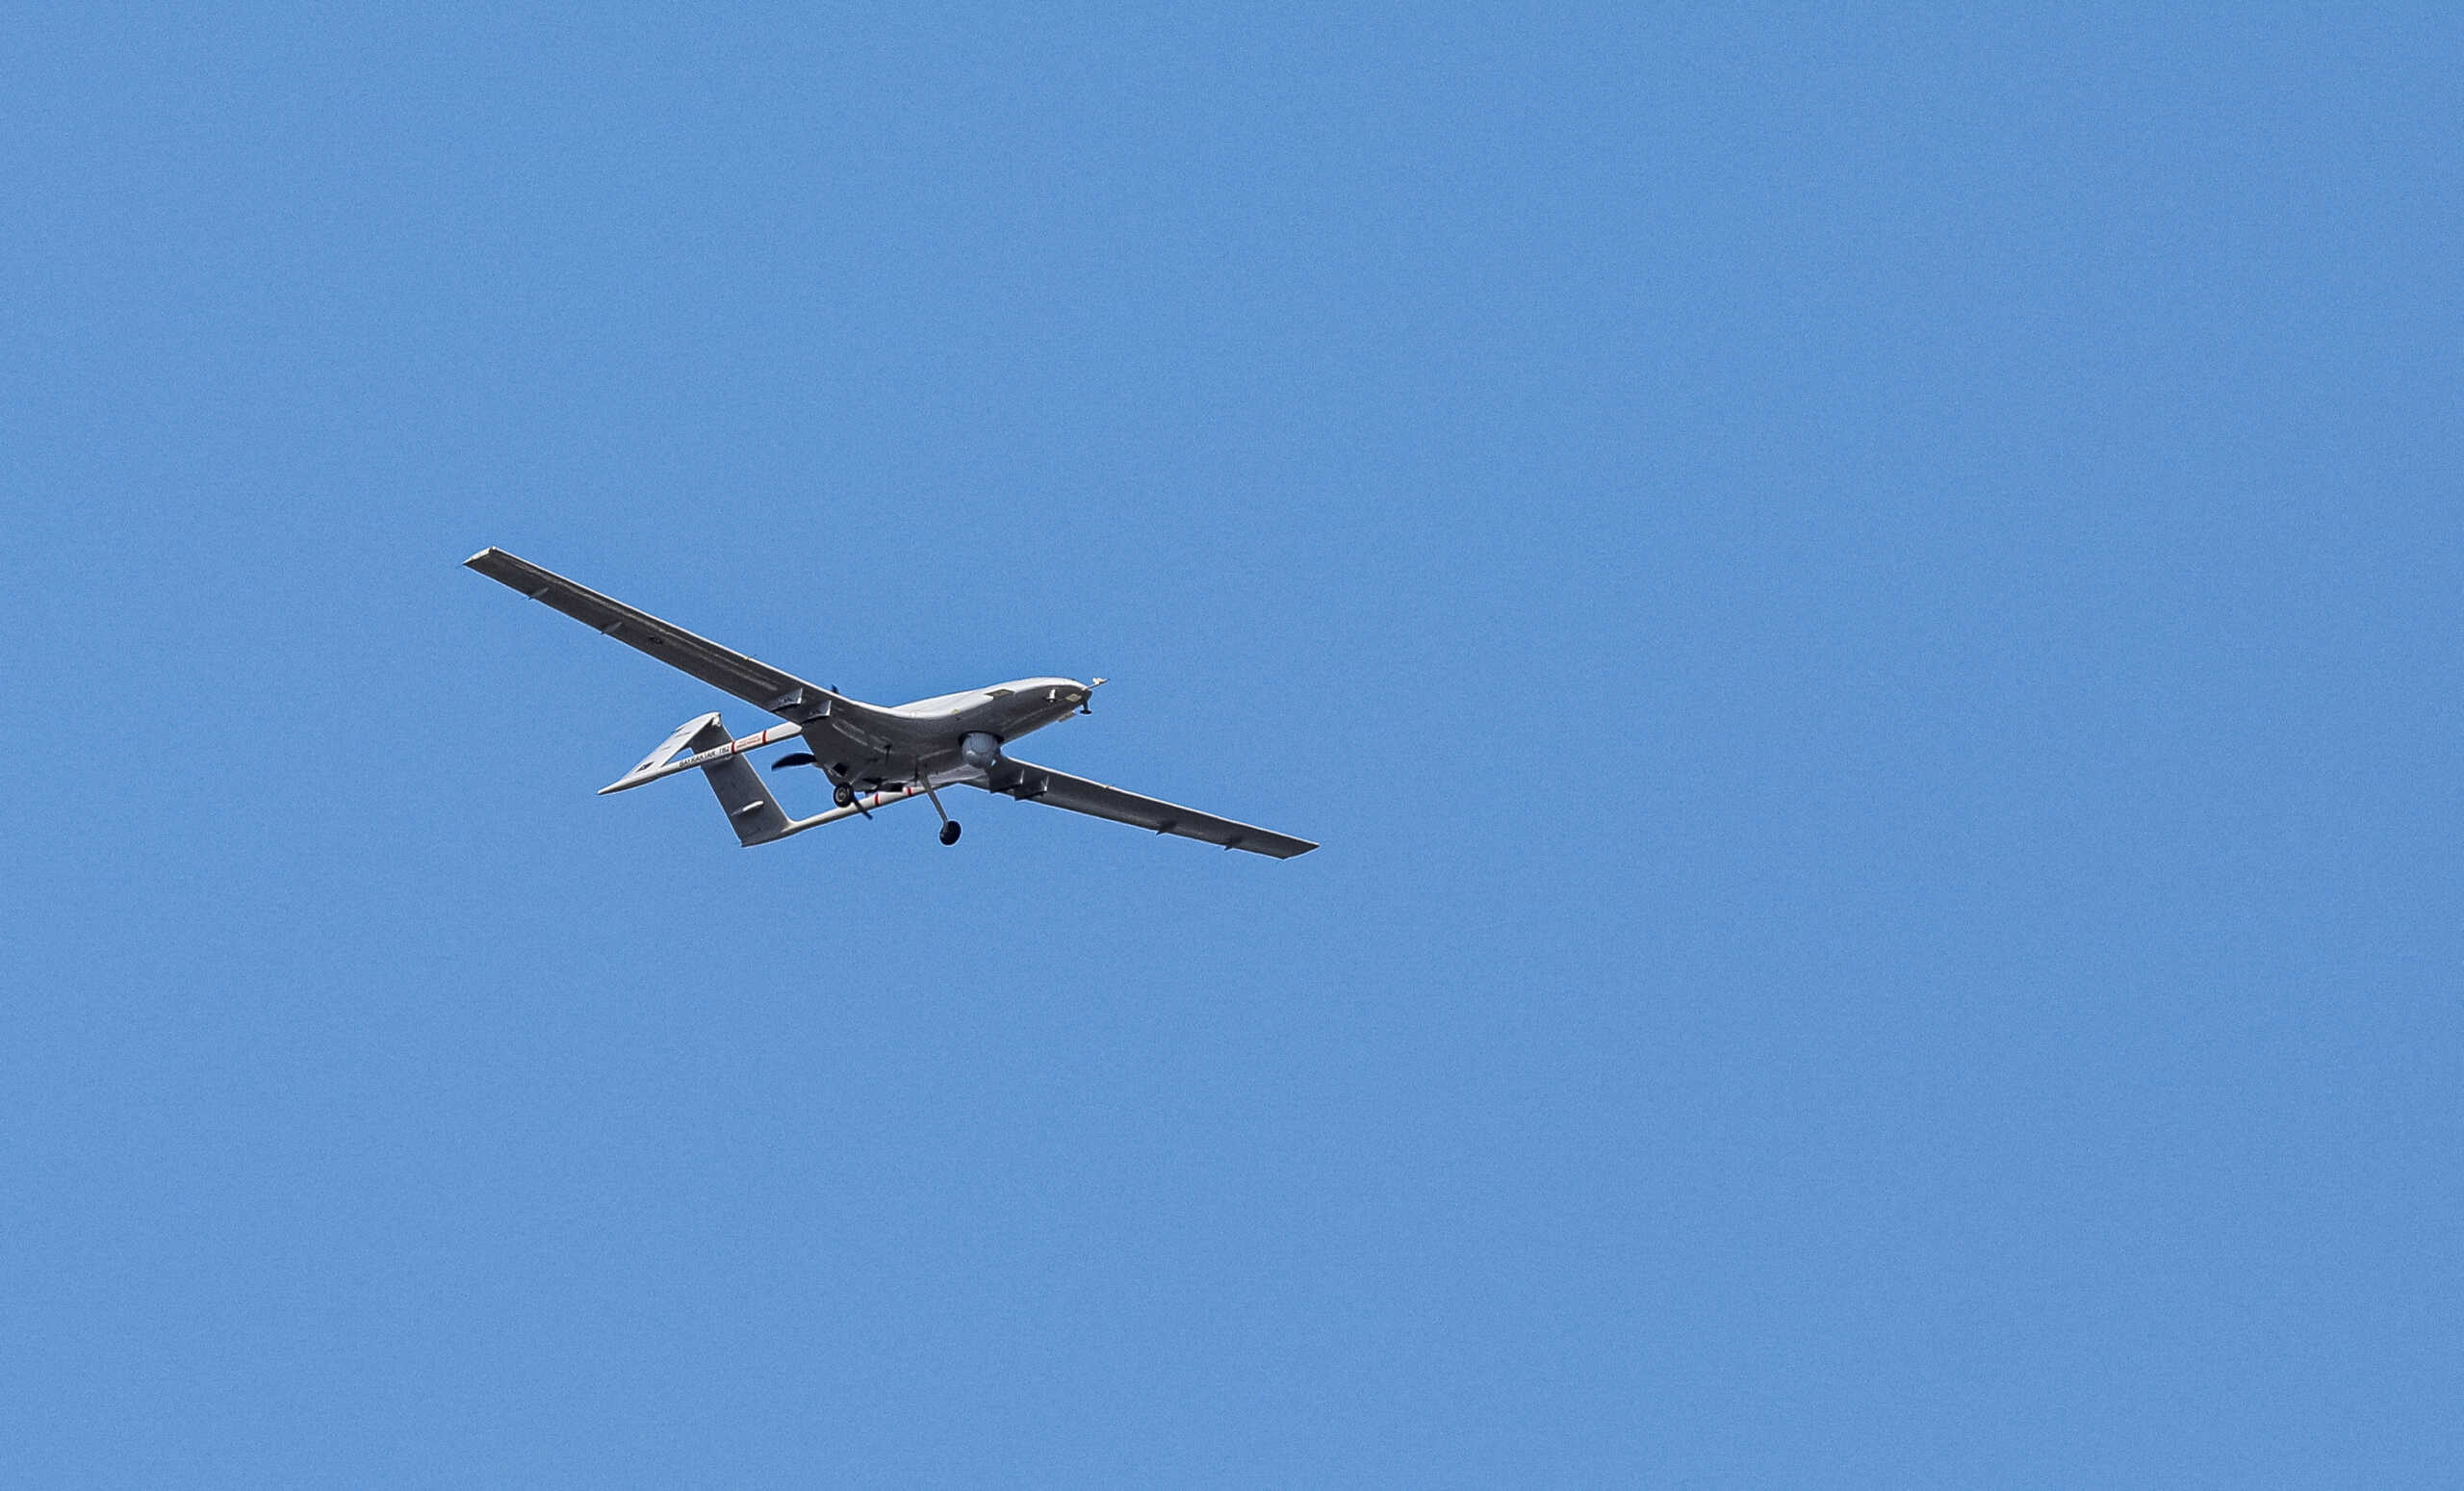 Υπέρπτηση τουρκικού drone πάνω από την Κίναρο τα ξημερώματα